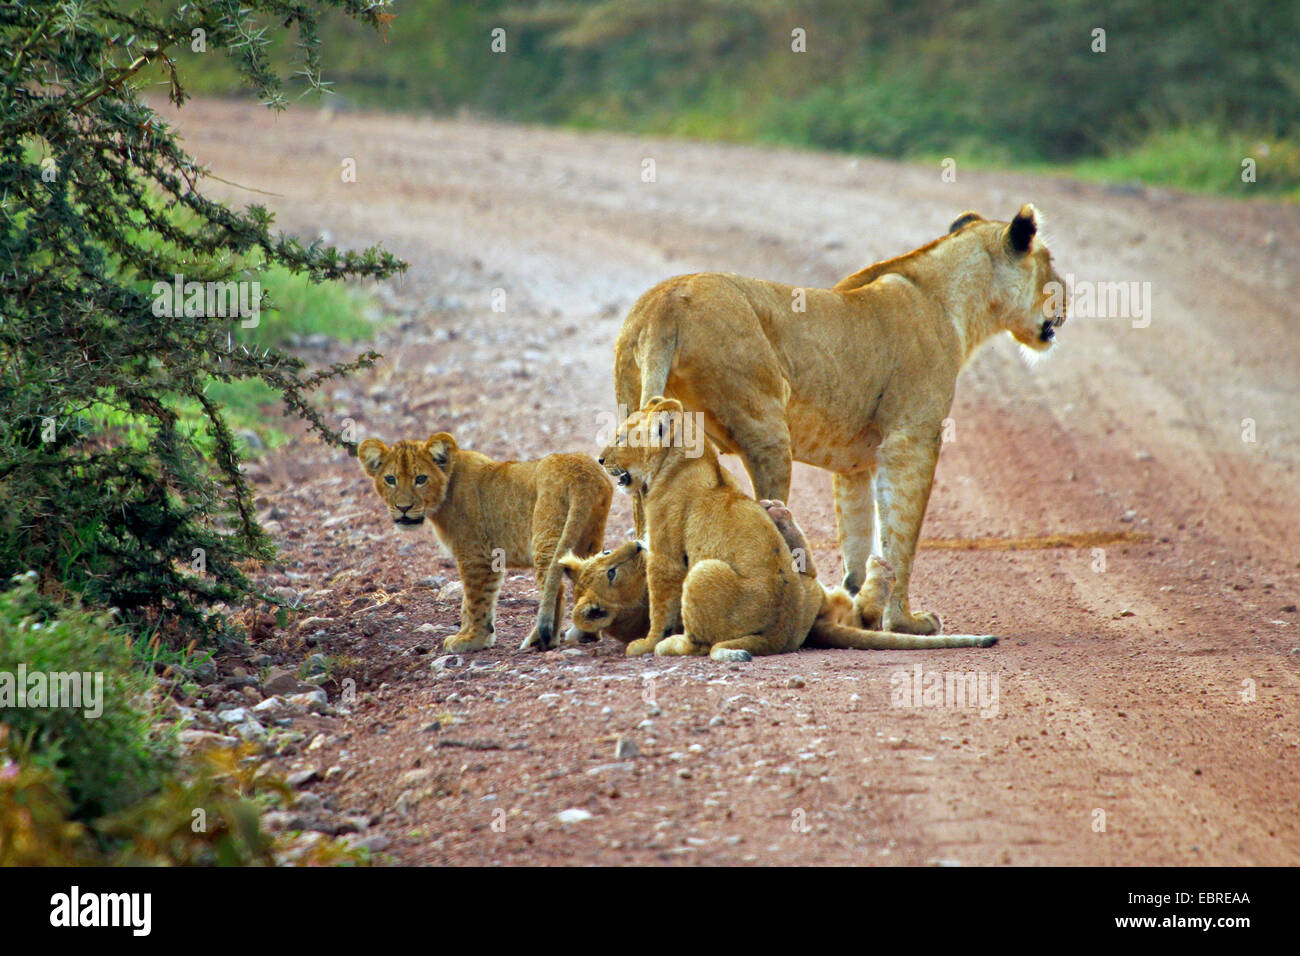 Lion (Panthera leo), lionne avec trois enfants sur une rue, la Tanzanie, le Parc National du Serengeti Banque D'Images